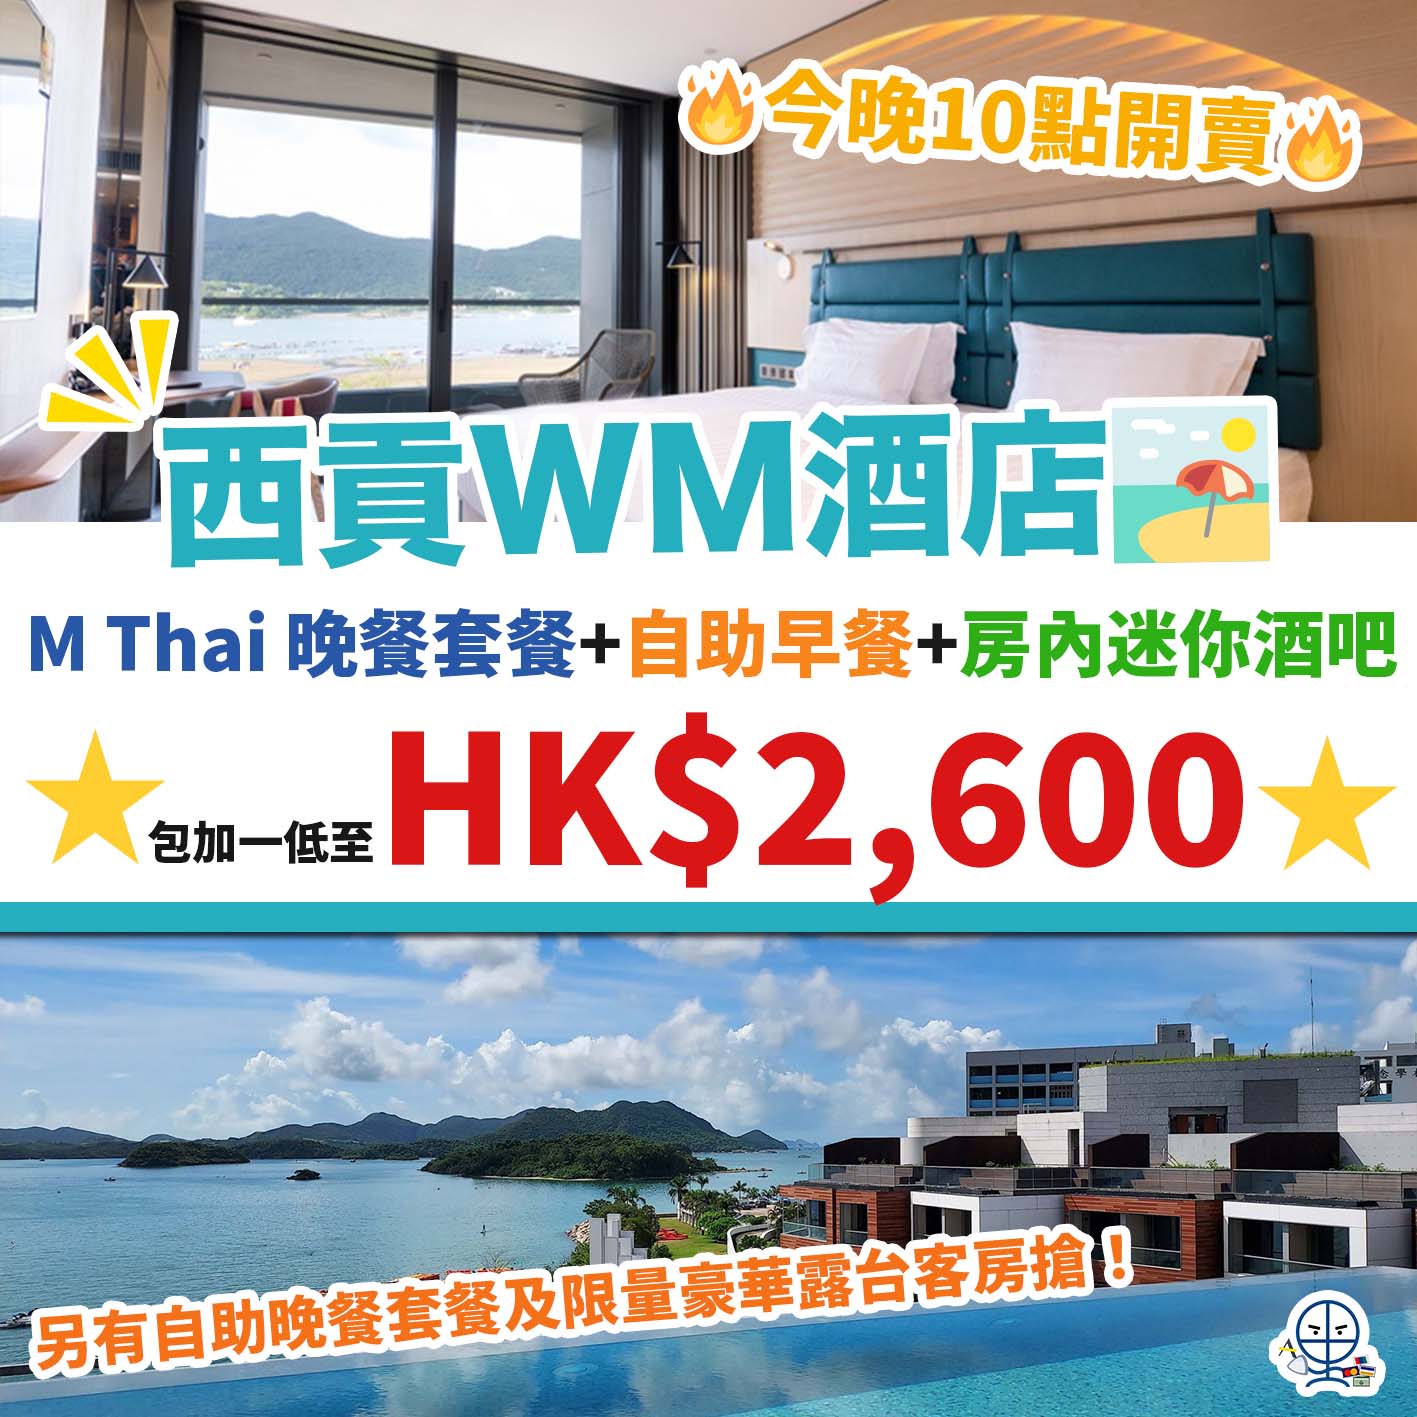 WM Hotel staycation優惠，本地旅遊，酒店住宿優惠，香港新酒店